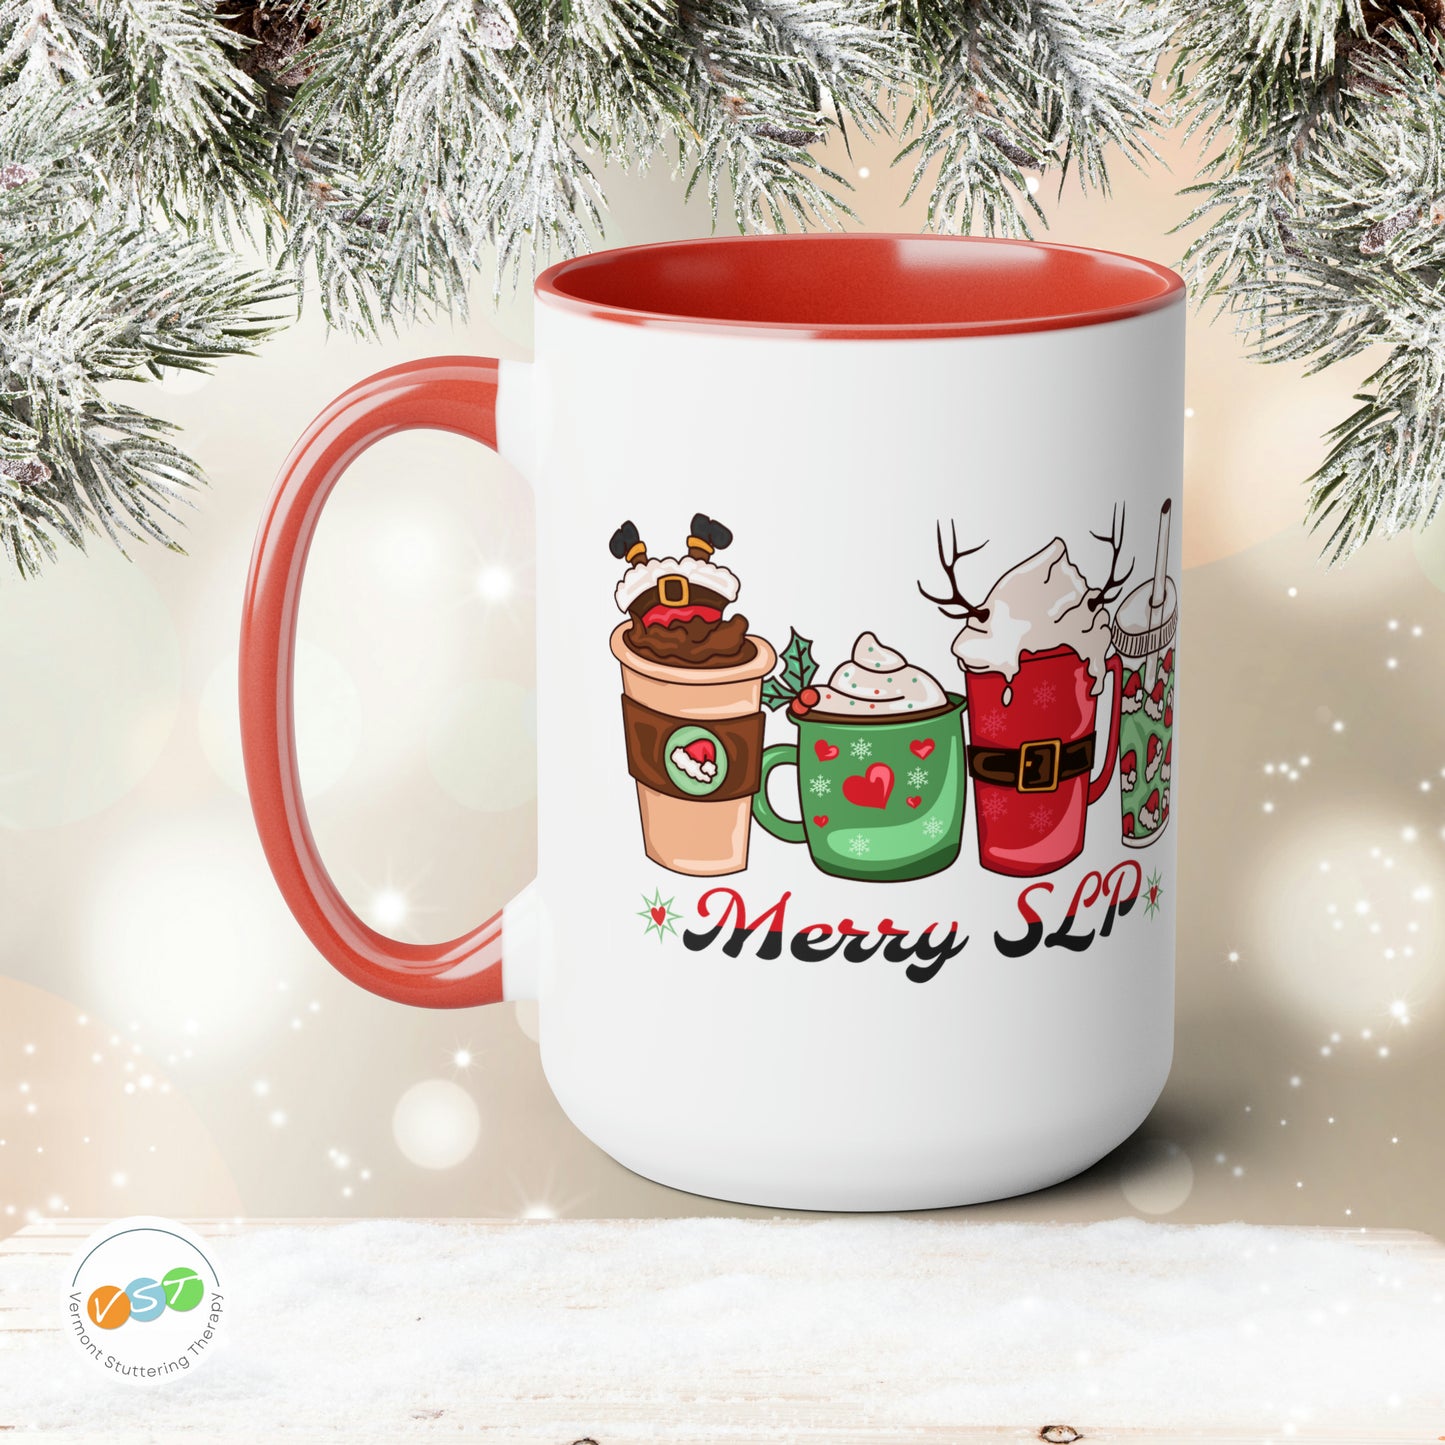 Merry SLP Christmas Coffee Mug Gift